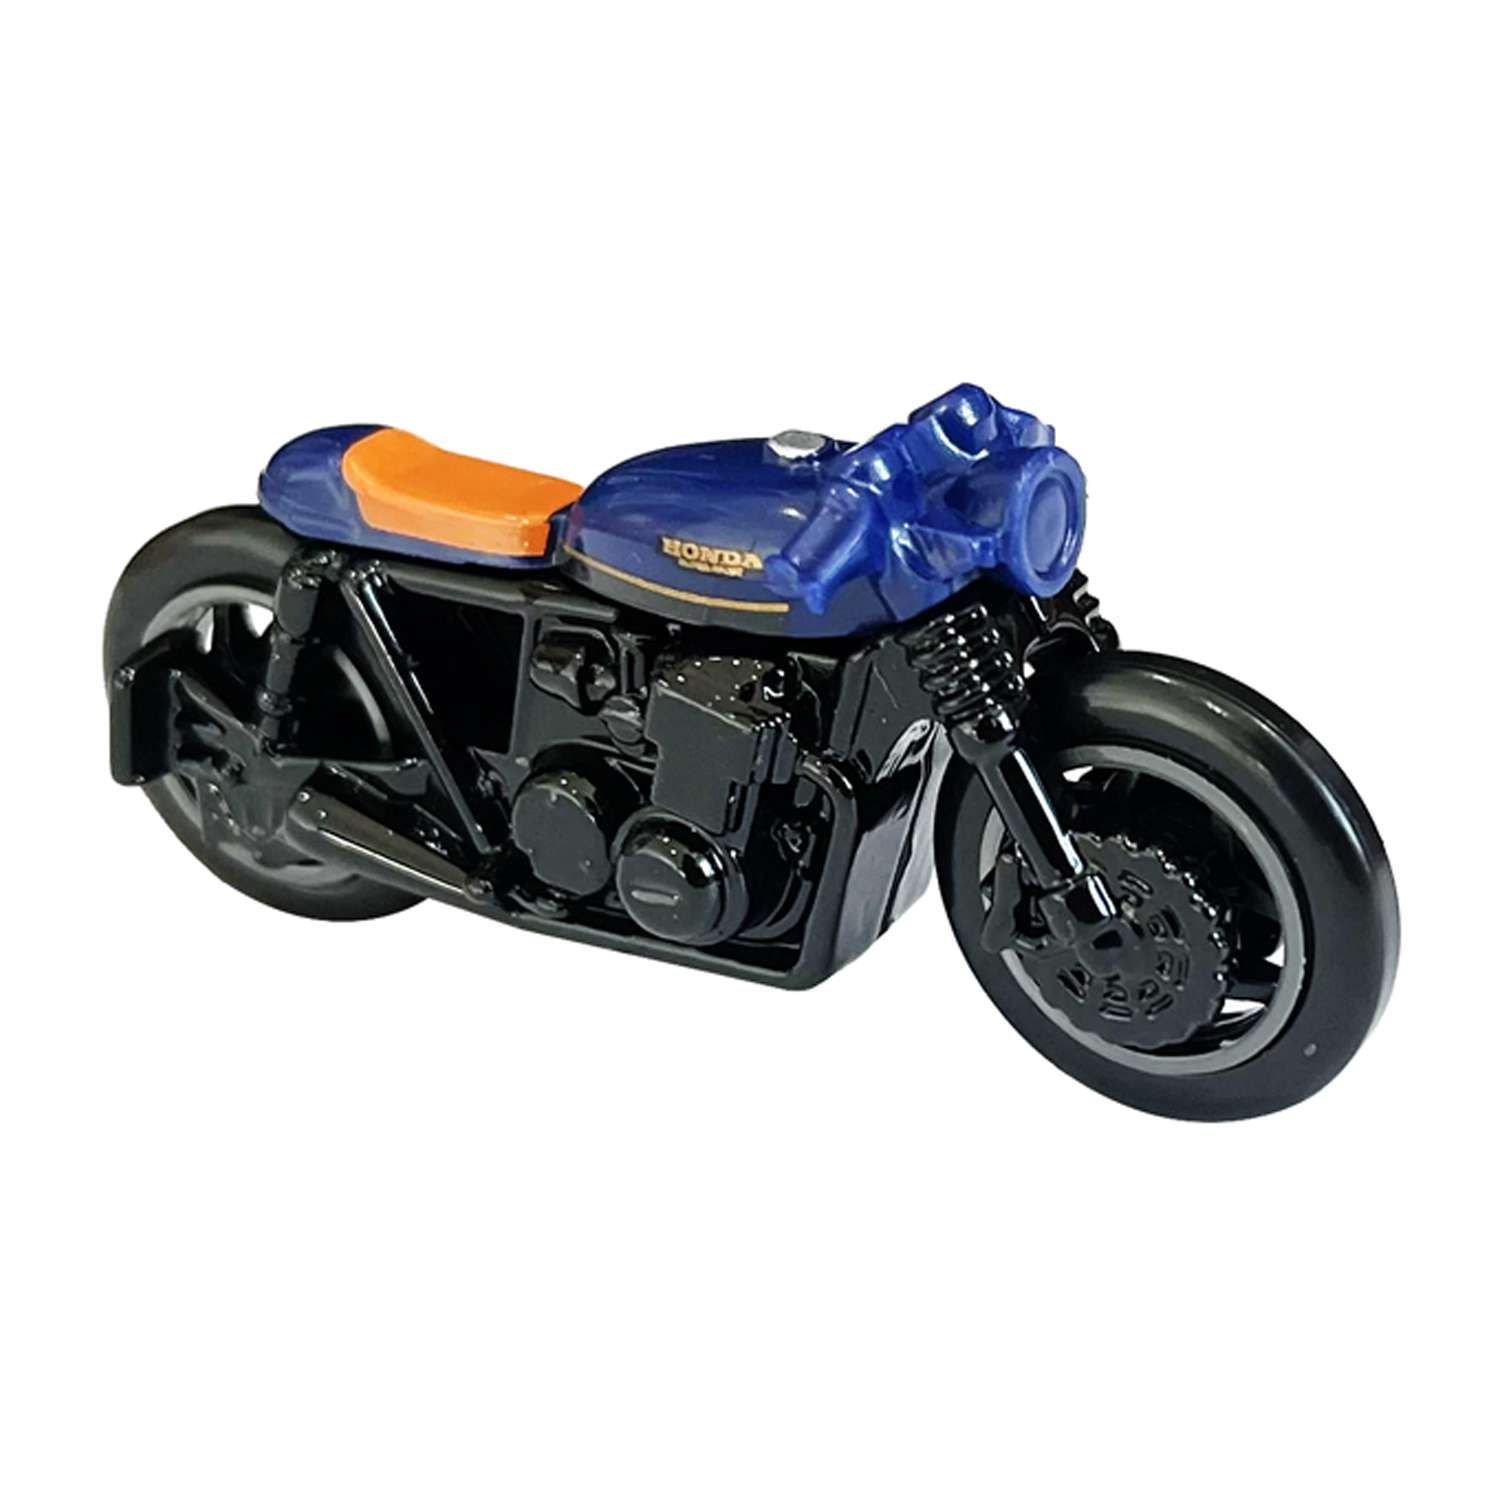 Игрушечный мотоцикл Hot Wheels honda cb 750 cafе 5785-A141-HKG49 - фото 1